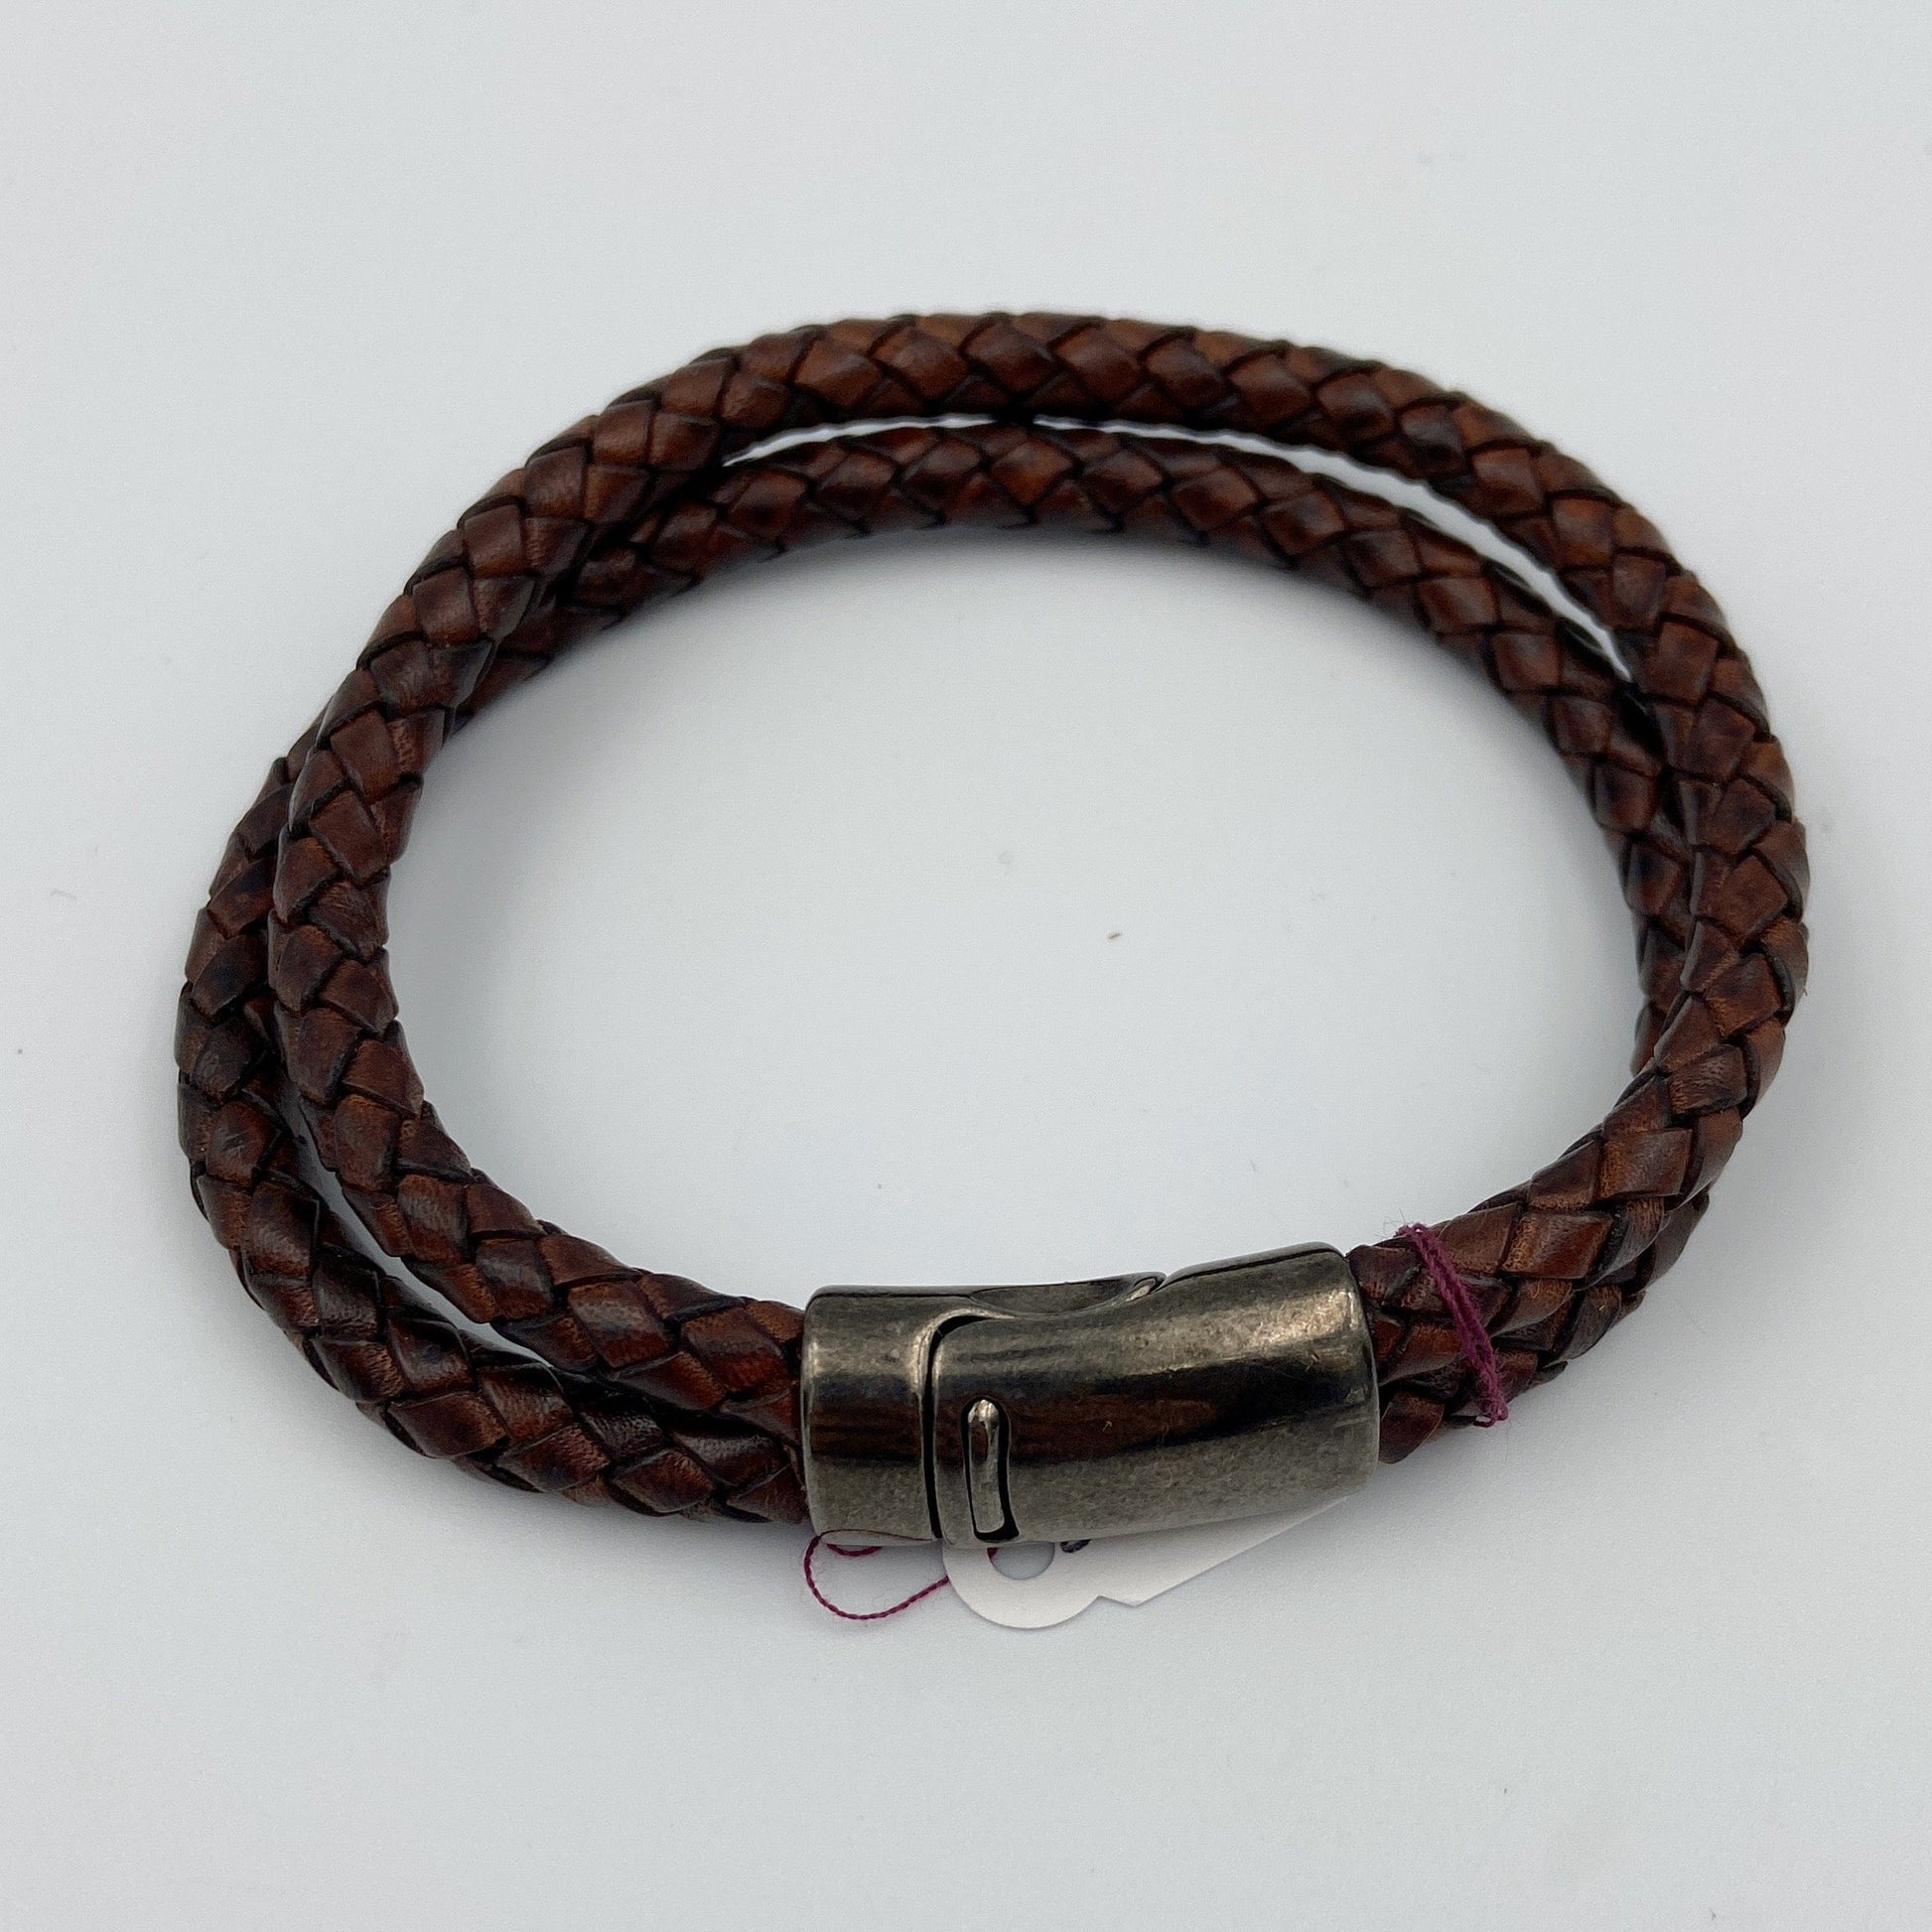 Multi Loop Leather Bracelet with Stainless Steel Loop Clasp